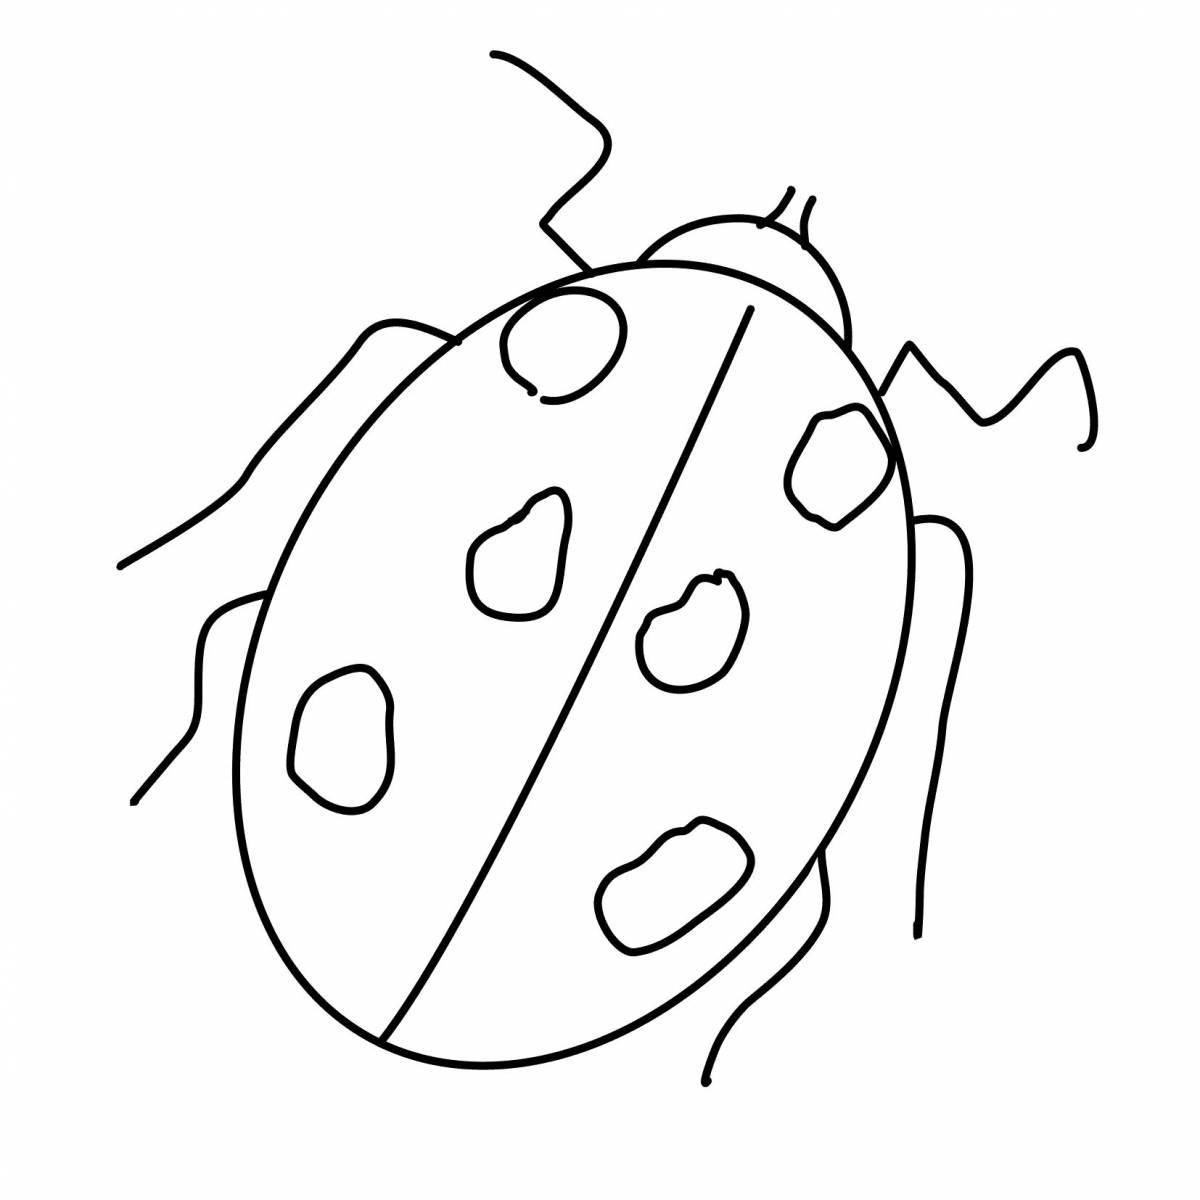 Fun coloring ladybug